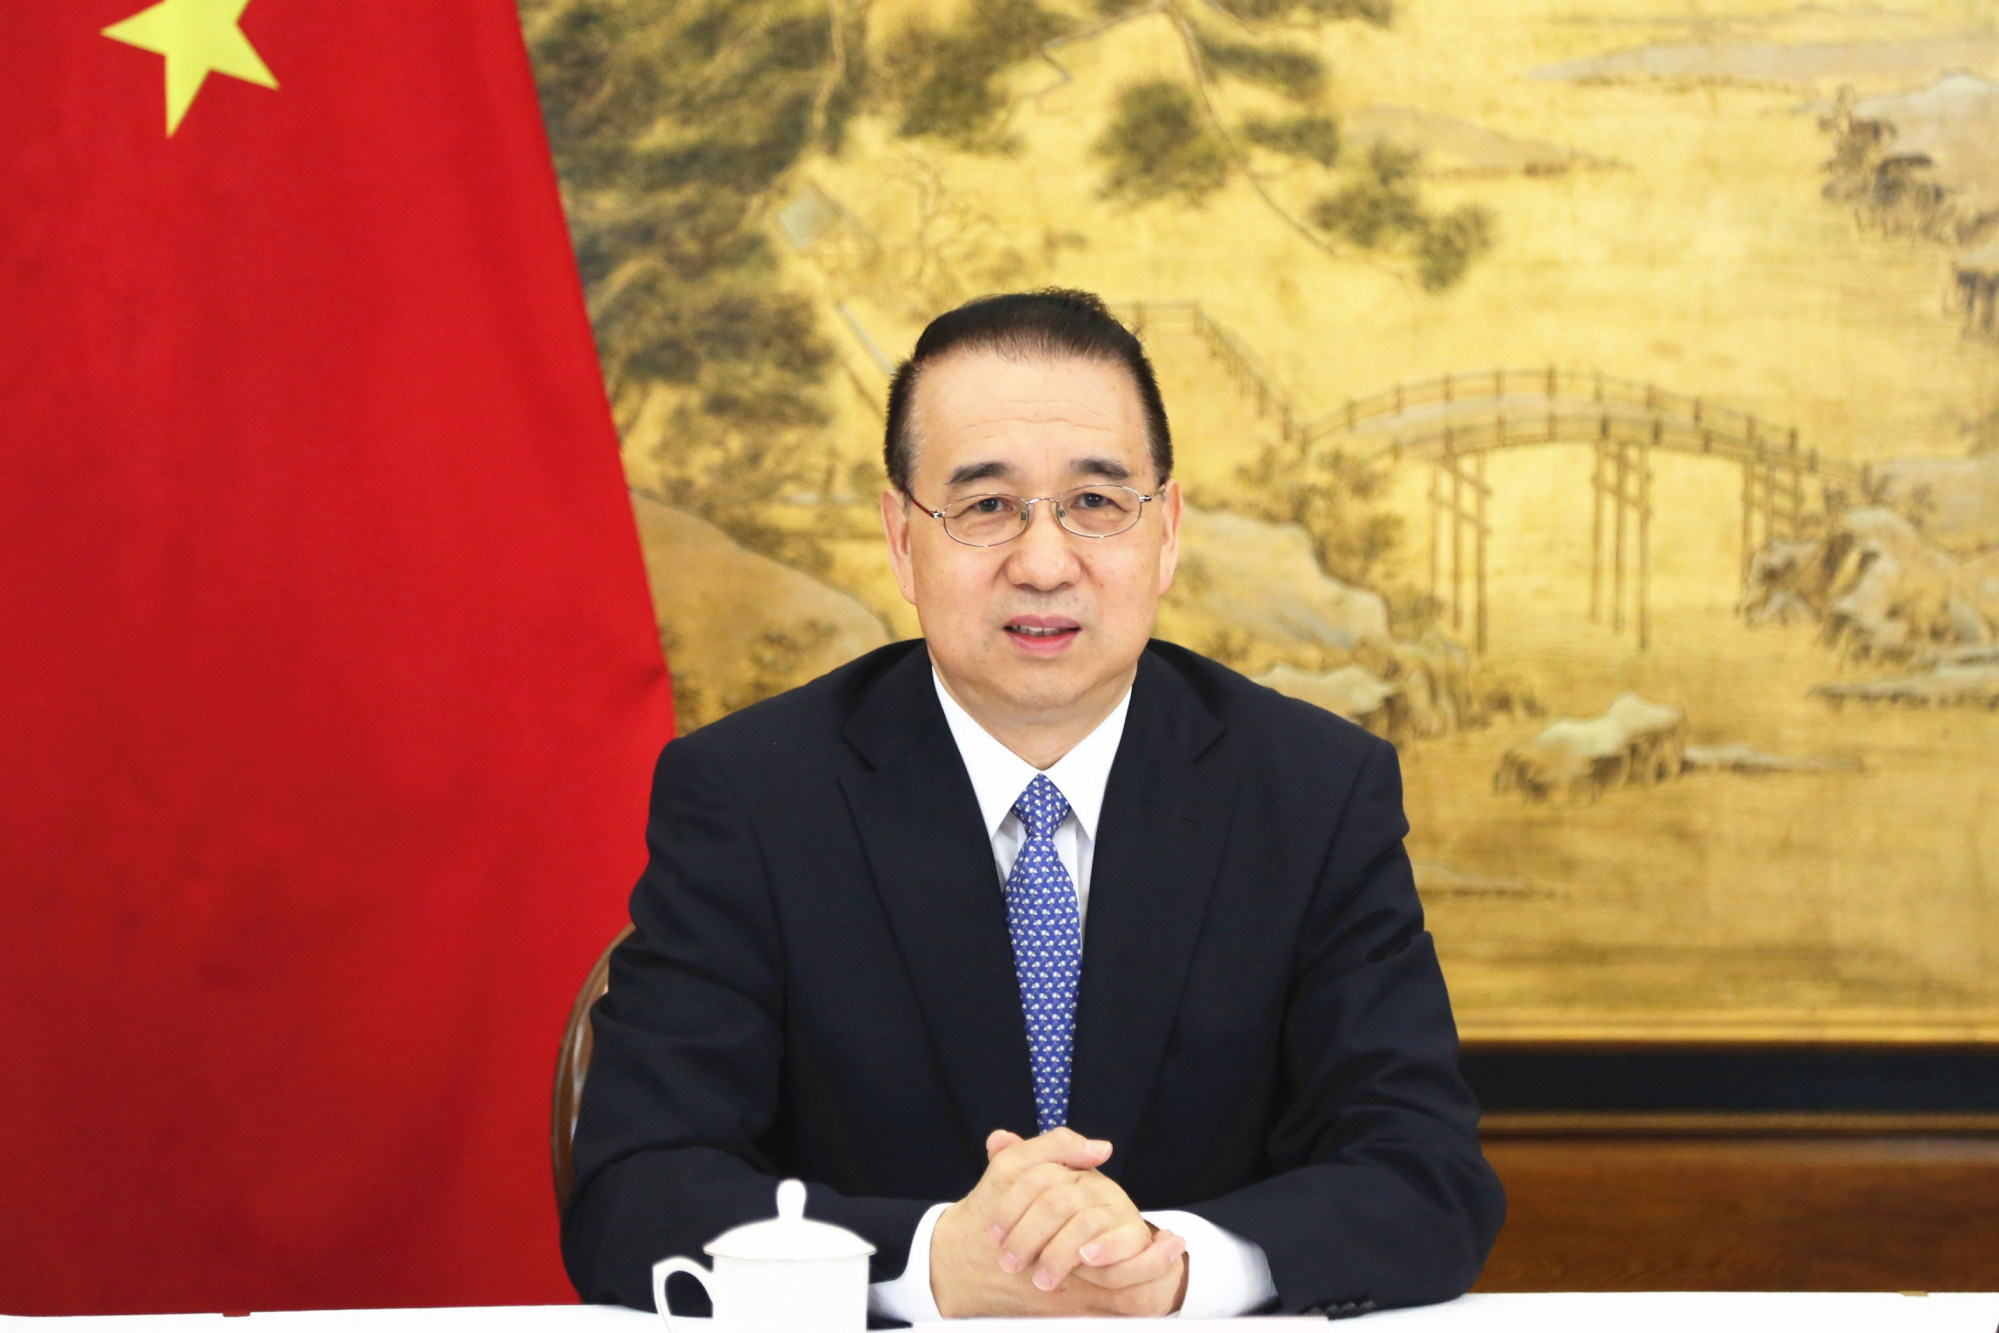 Veteran diplomat Liu Guangyuan heads the foreign ministry’s Hong Kong office. Photo: Handout